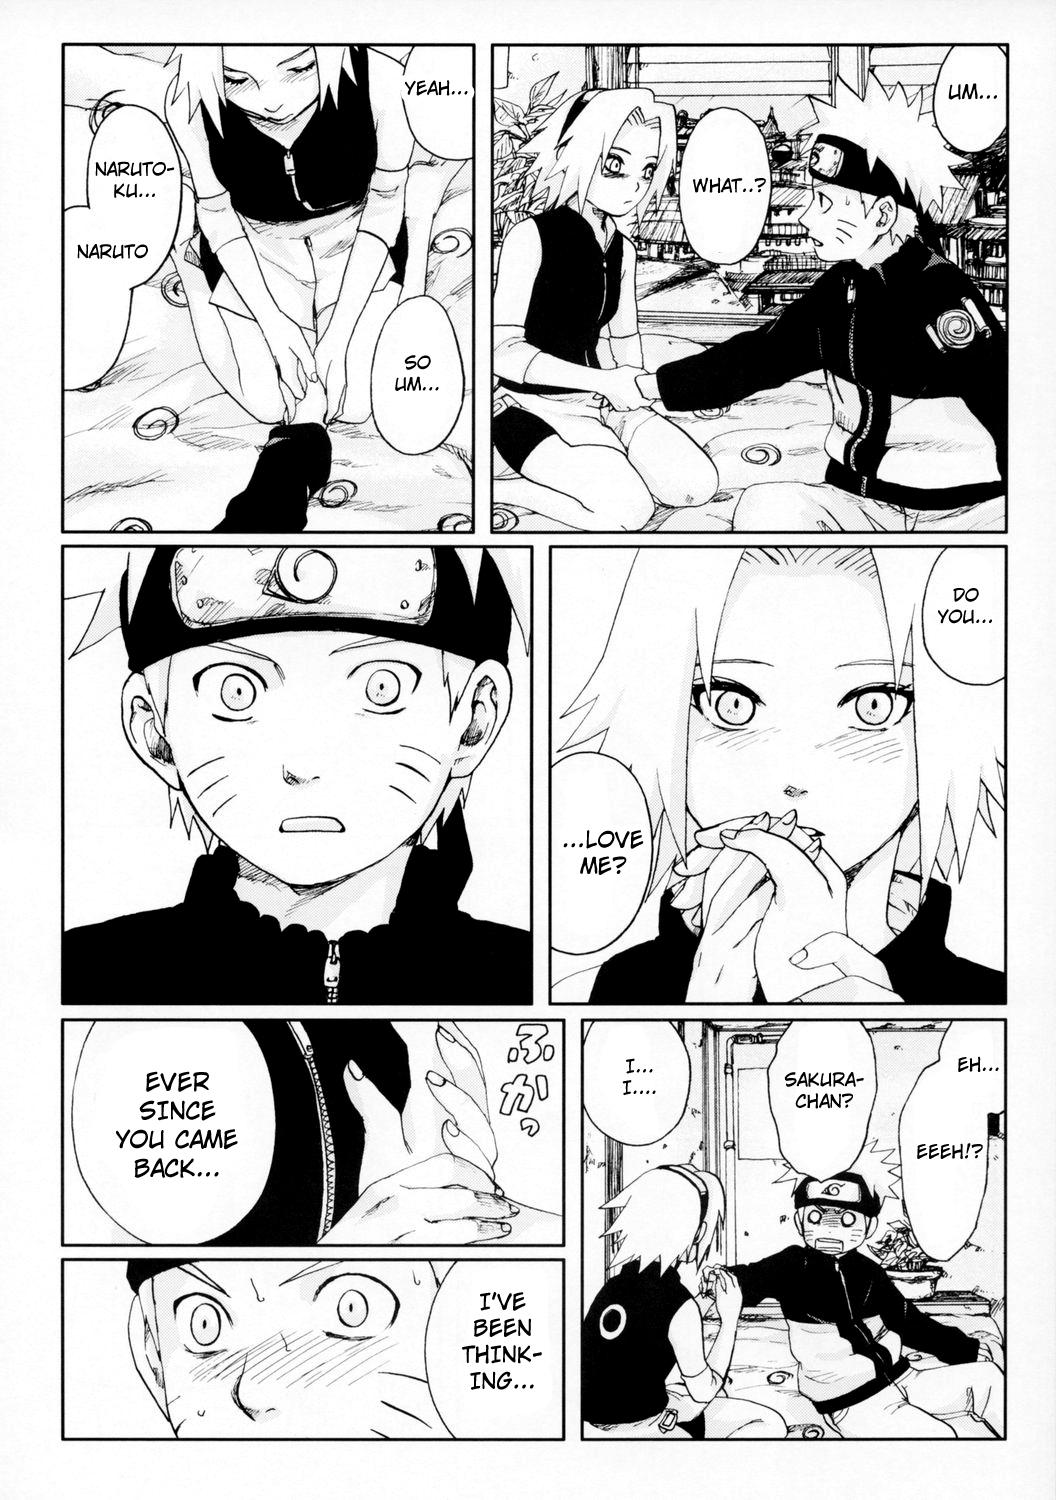 Fucking Nisemono - Naruto Gayfuck - Page 11